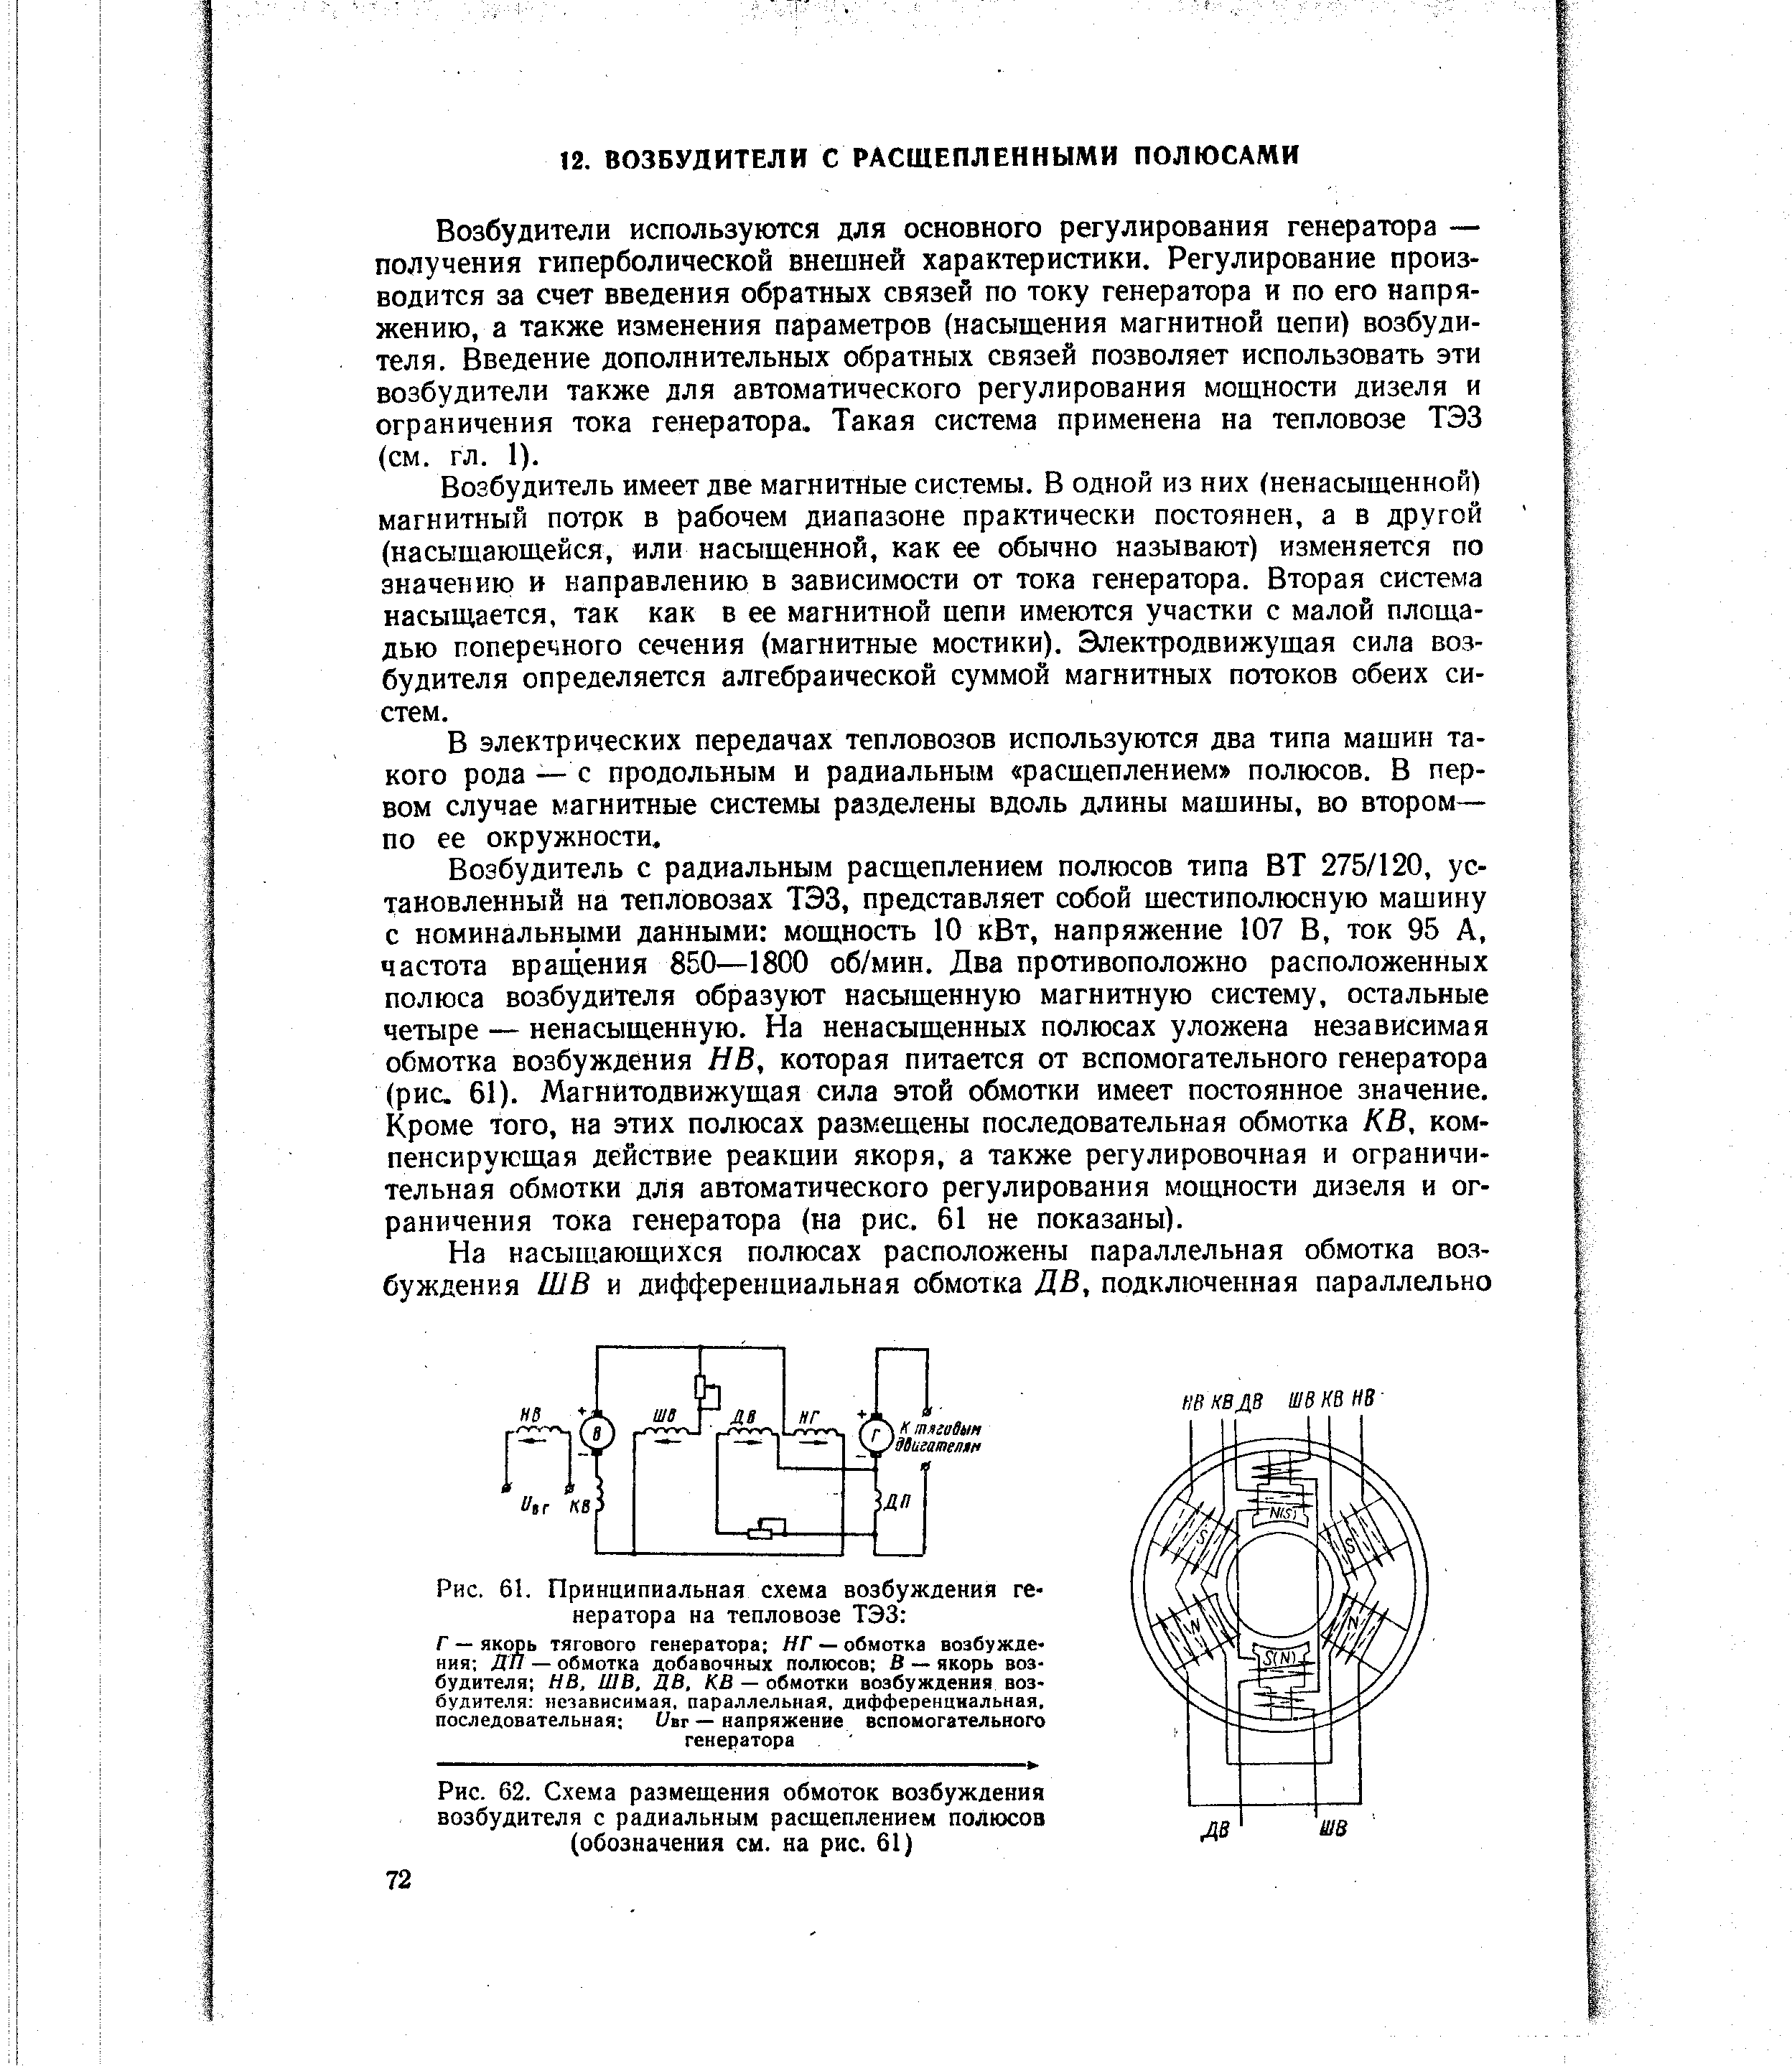 Рис. 62. Схема размещения обмоток возбуждения возбудителя с радиальным расщеплением полюсов (обозначения см. на рис. 61)
